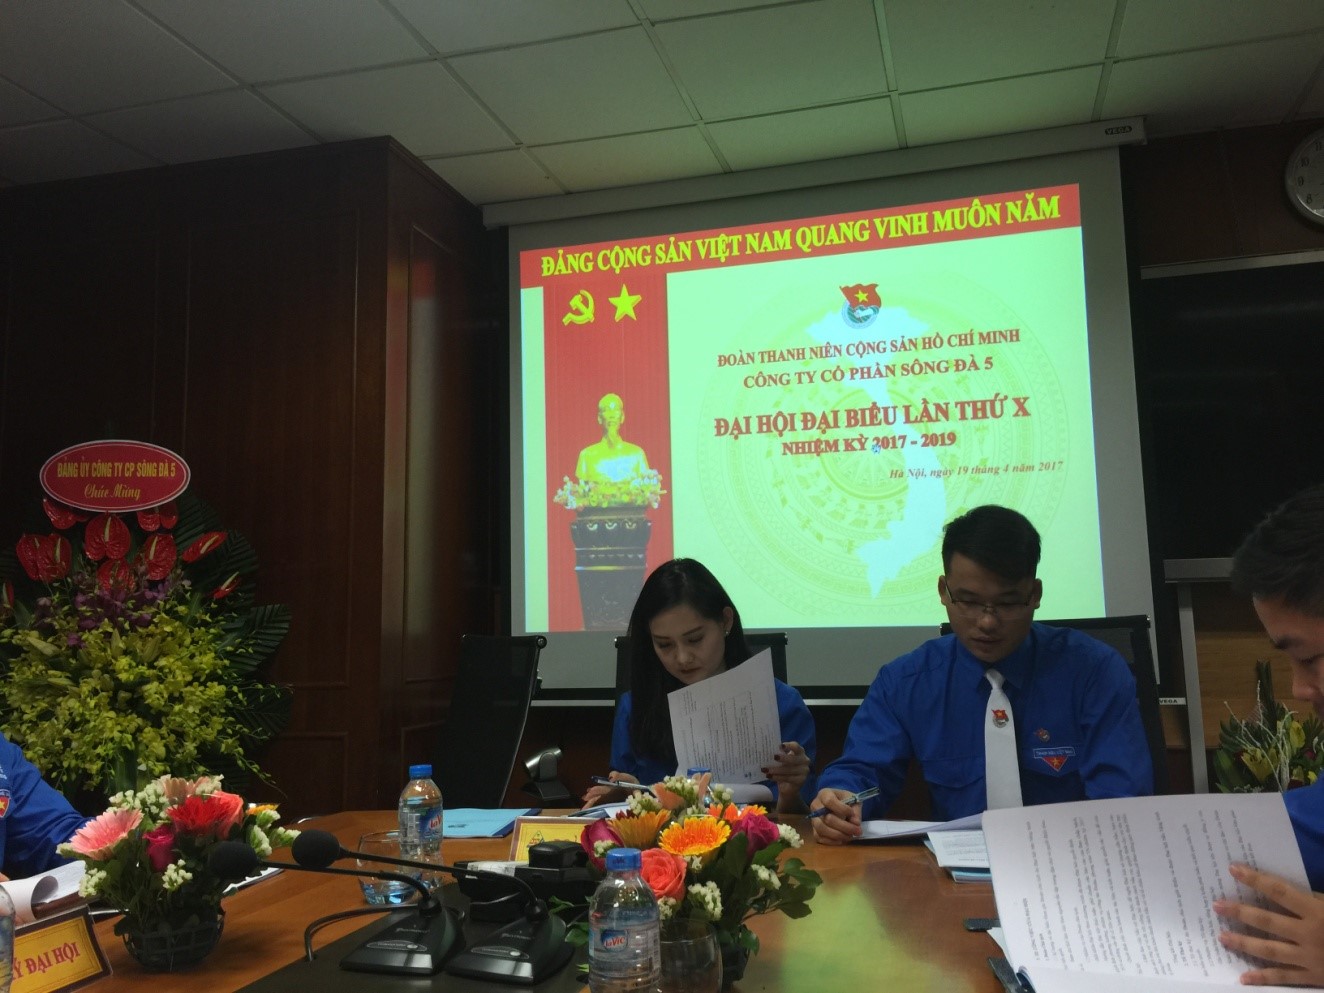 Ngày 19/4: Đại hội Đại biểu Đoàn TNCS Hồ Chí Minh Công ty CP Sông Đà 5.